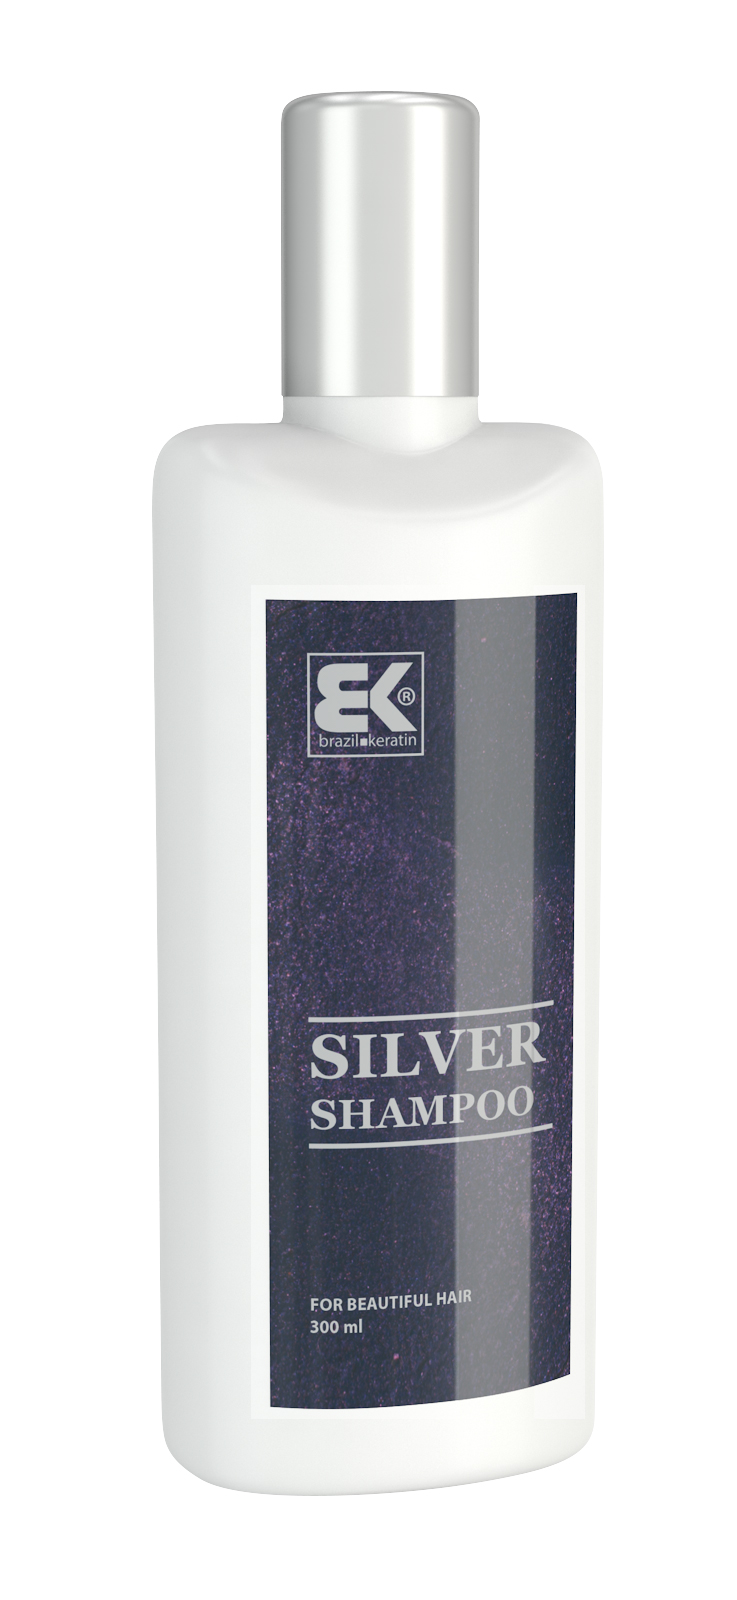 Brazil Keratin Šampón s modrými pigmentmi pre blond vlasy Silver Shampoo 300 ml + 2 mesiace na vrátenie tovaru